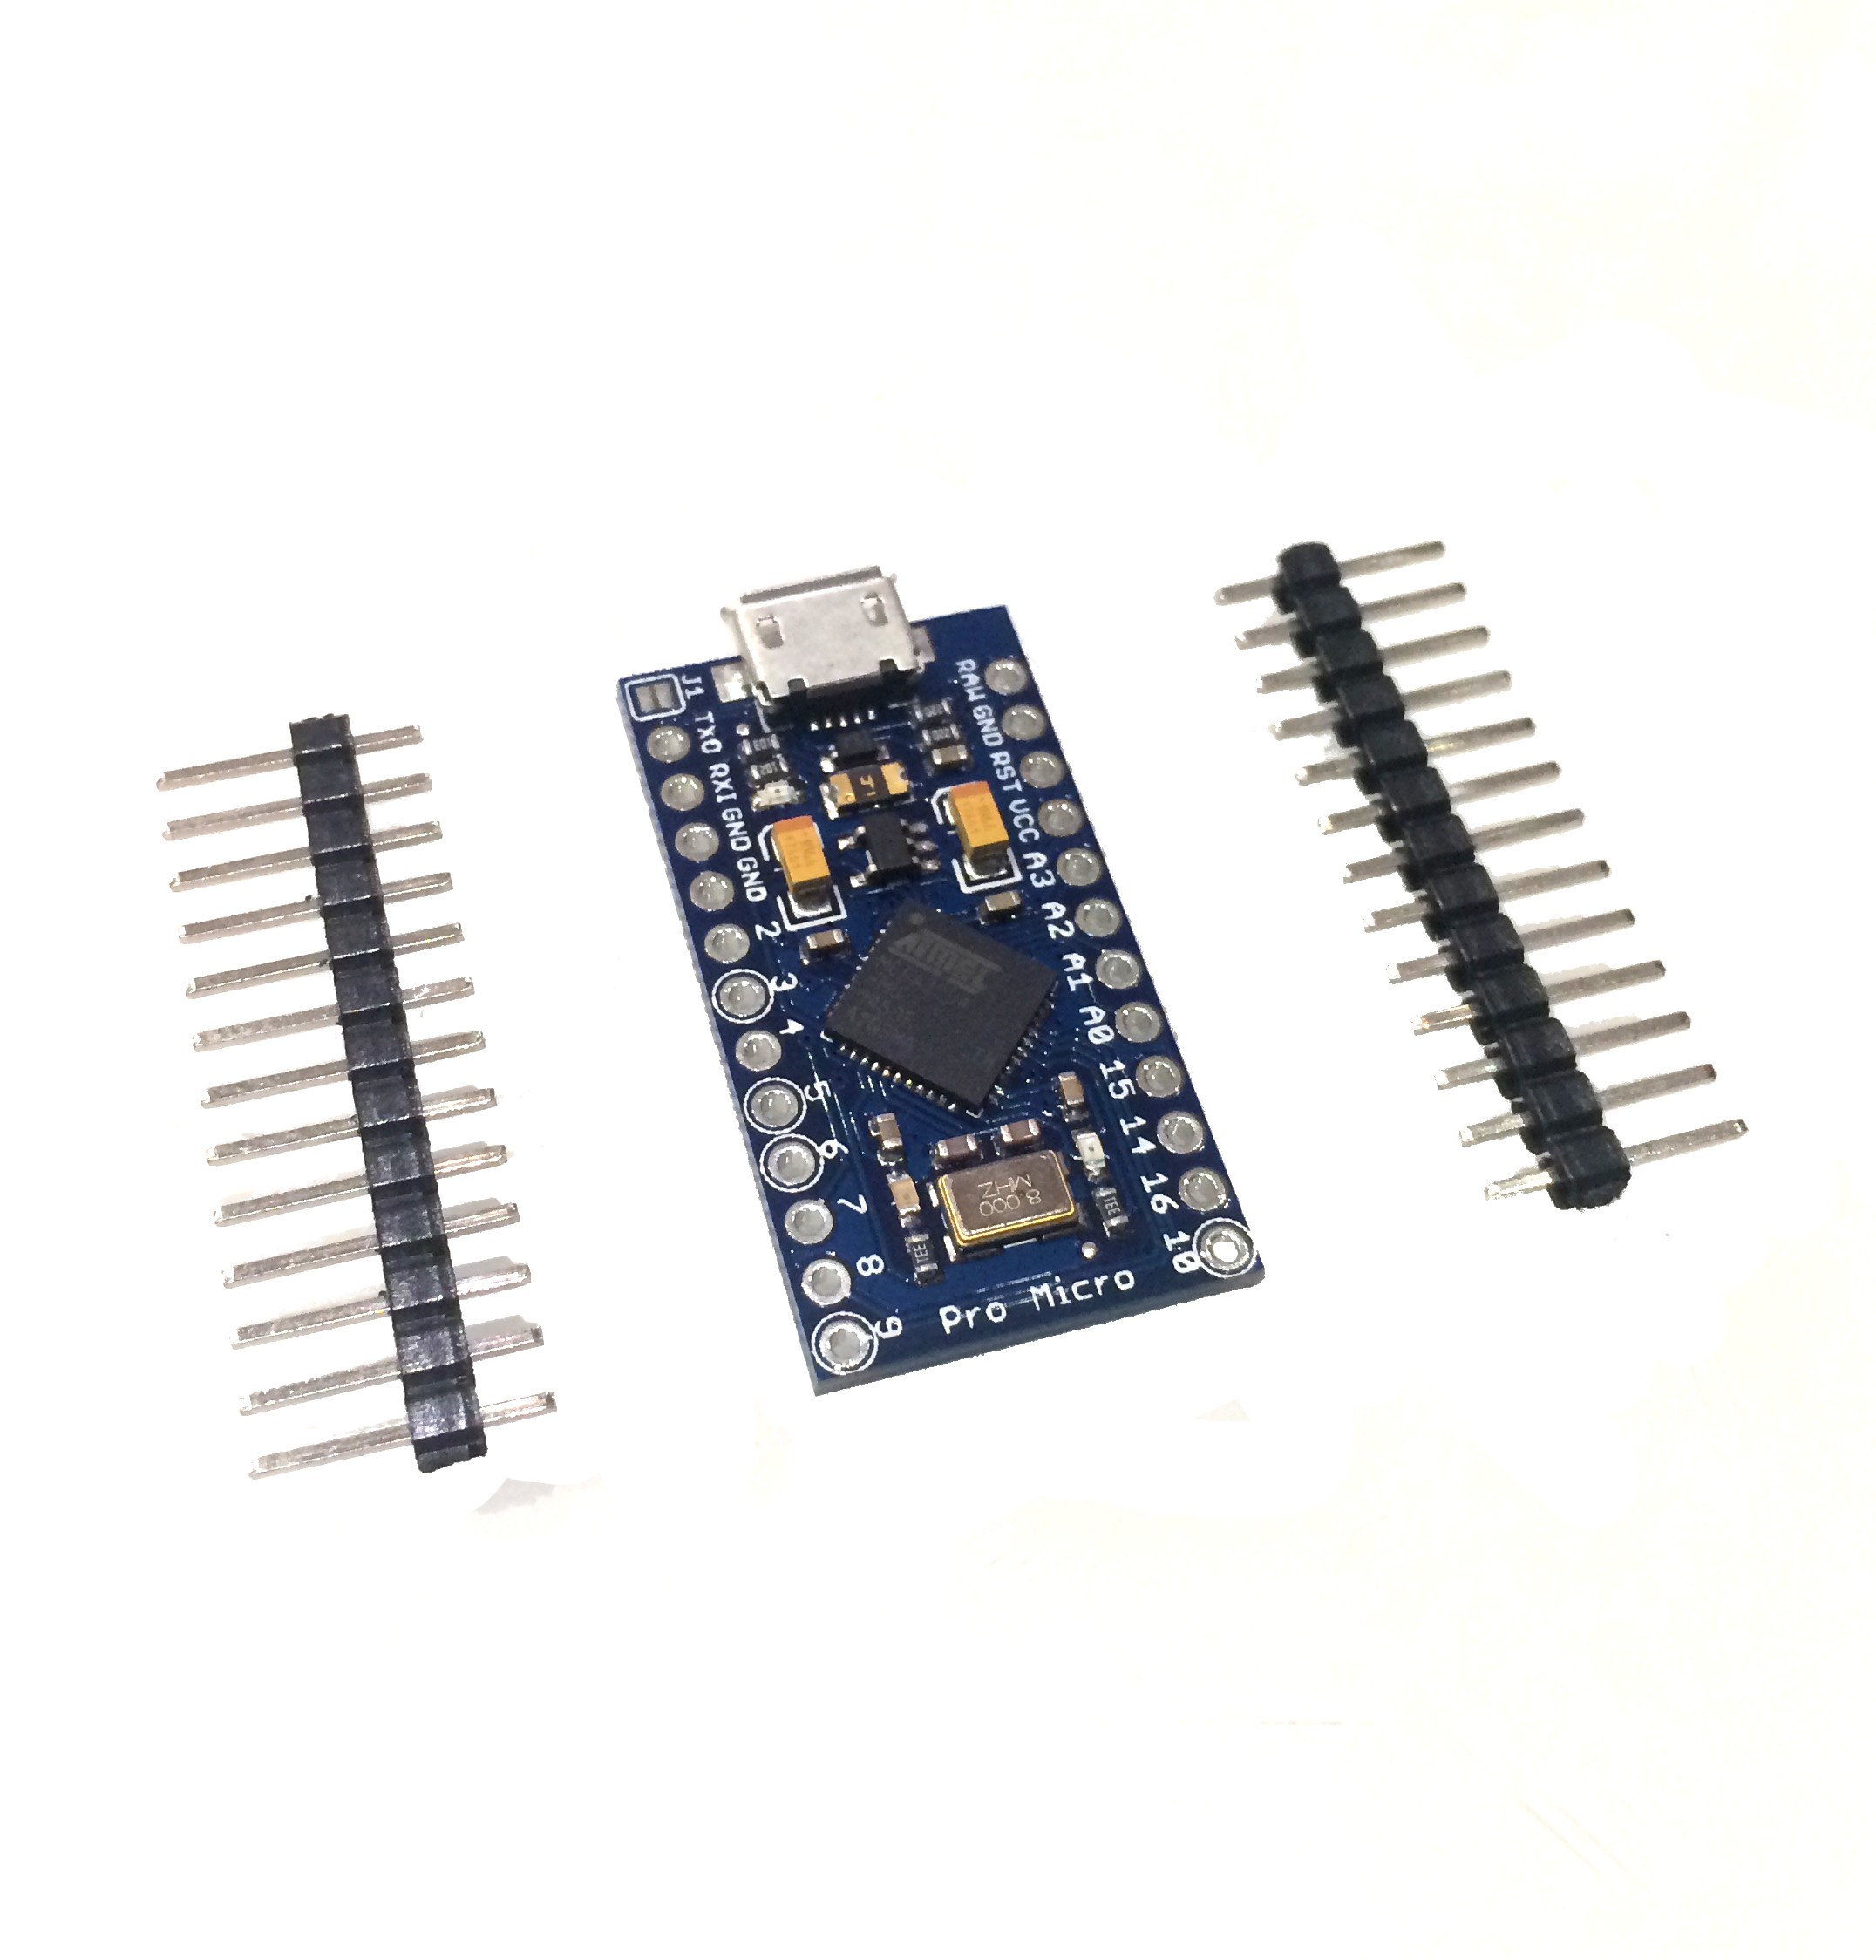 3 V 3675 Pro Micro similaire par exemple pour Arduino IDE Adafruit itsybitsy 32u4 8 MHz 